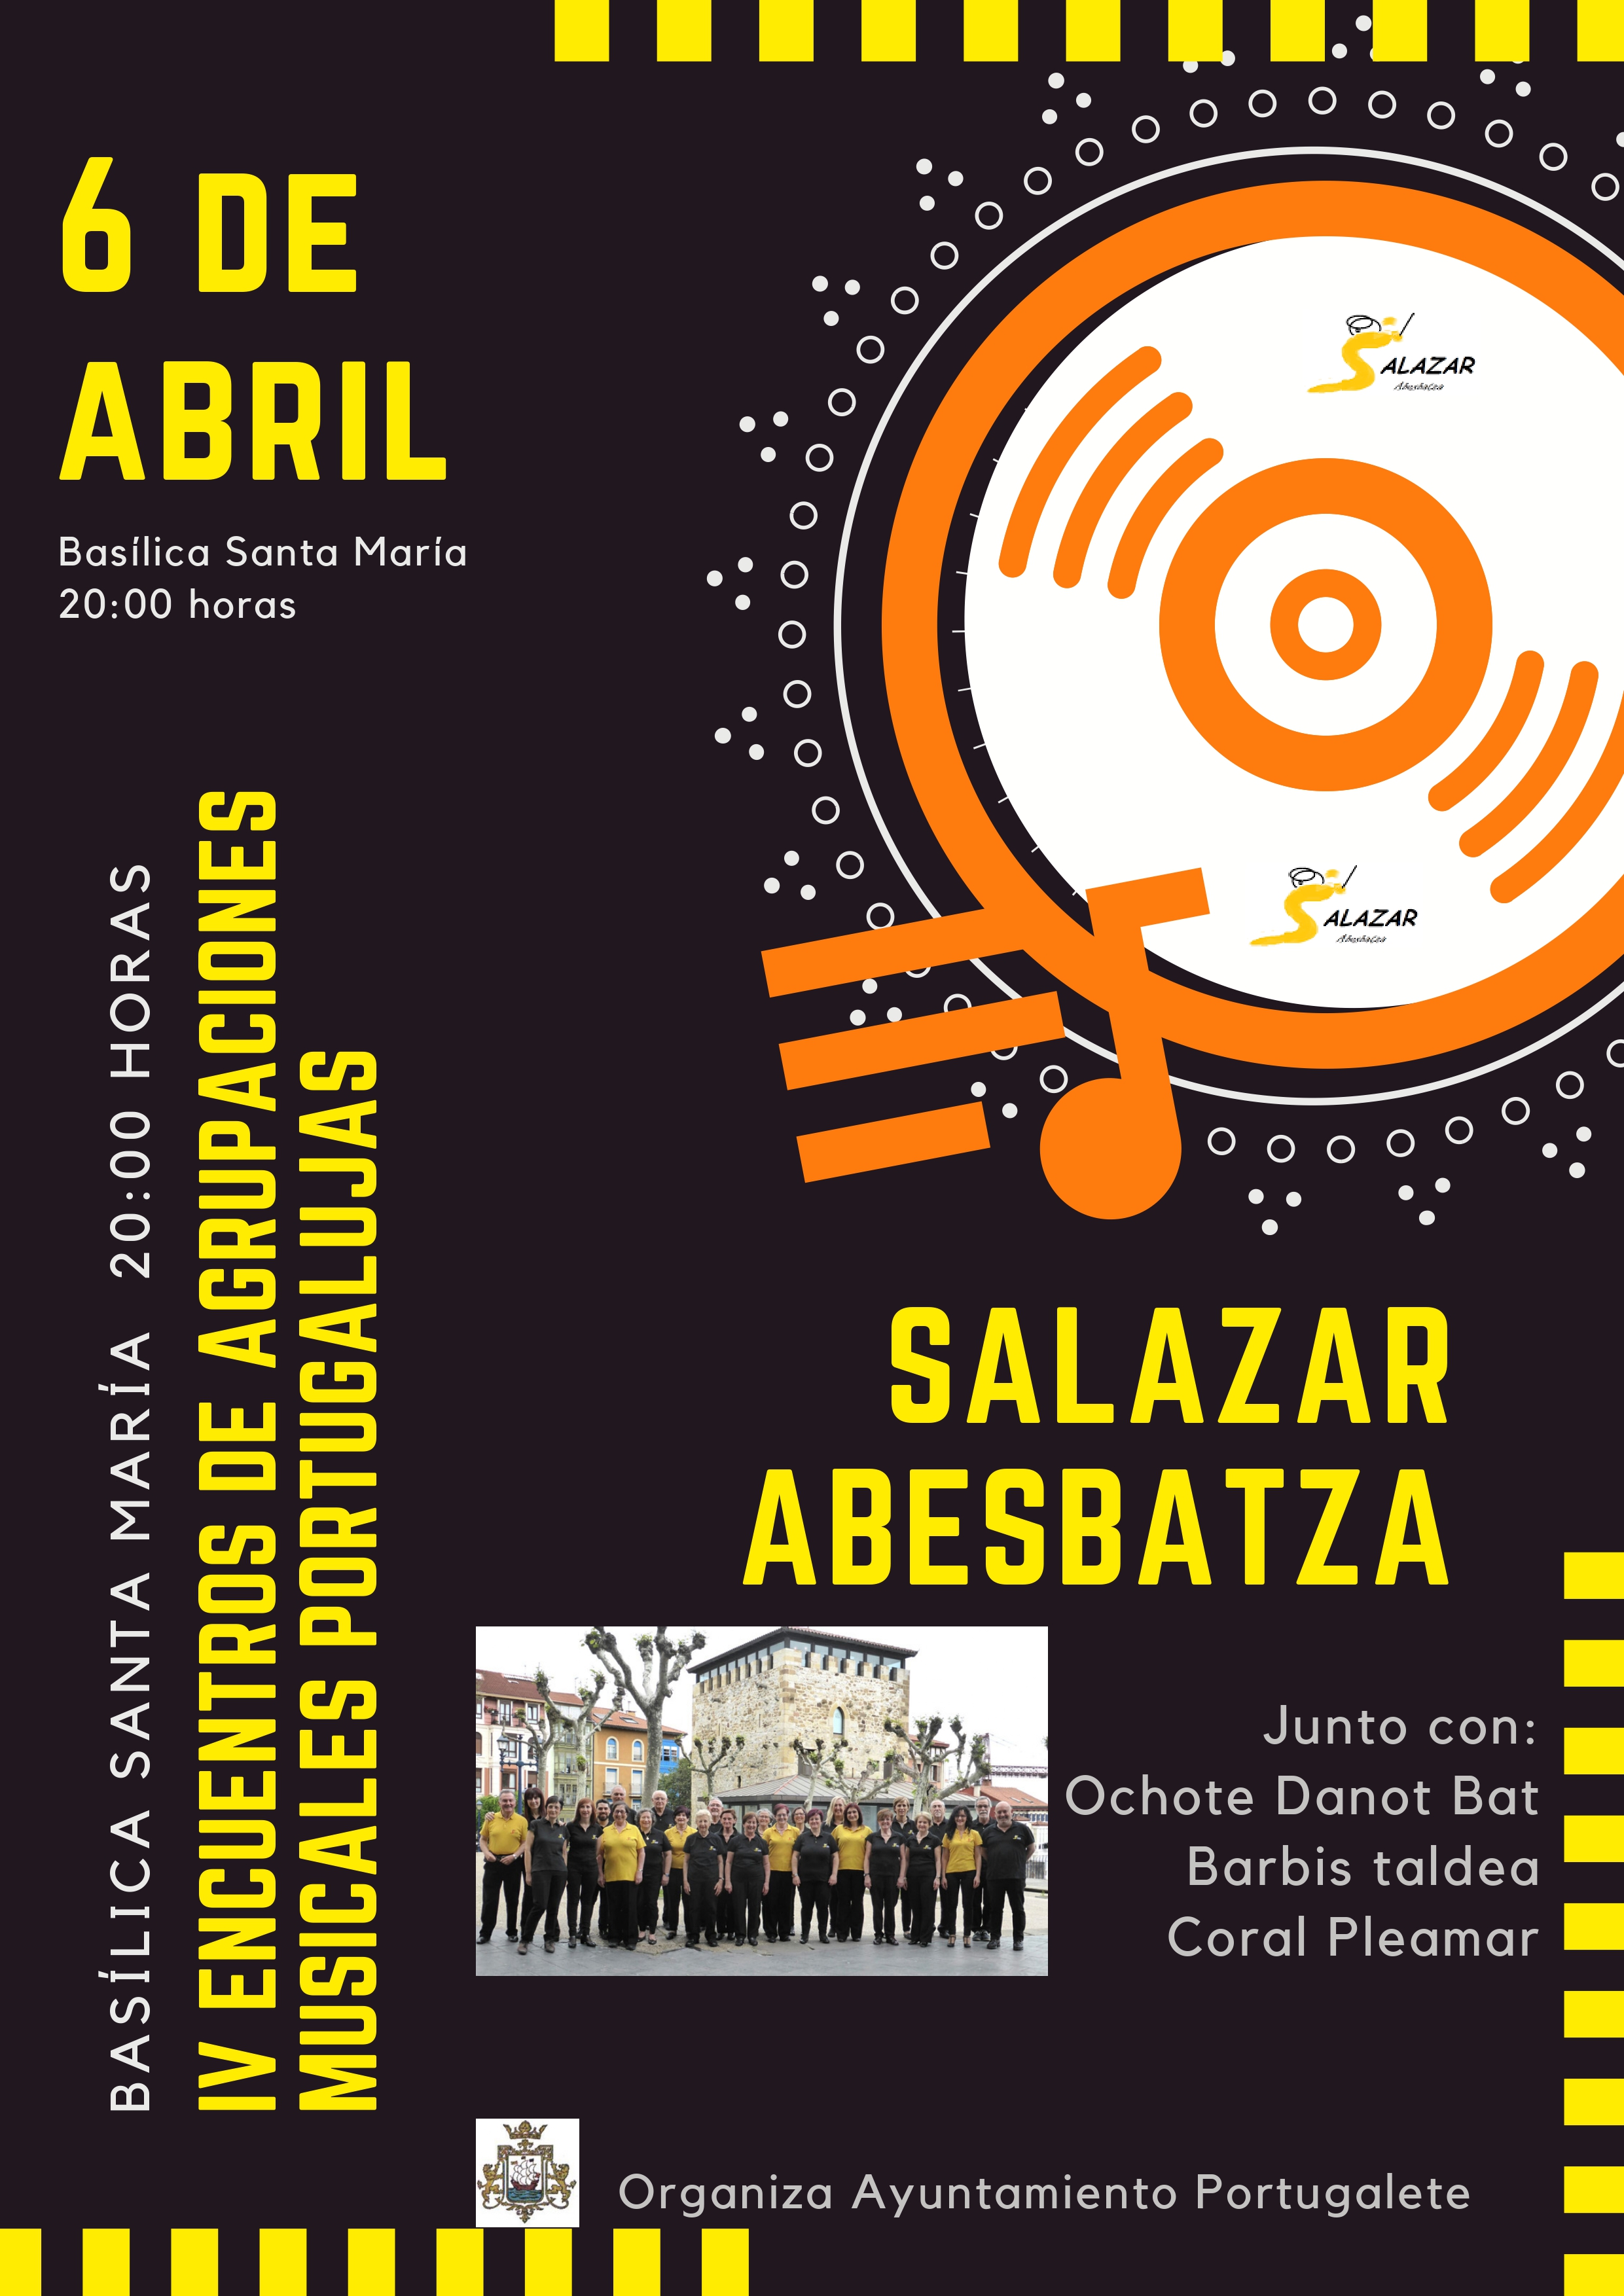 concierto 06 04 2019 SALAZAR ABESBATZA page 0001 1